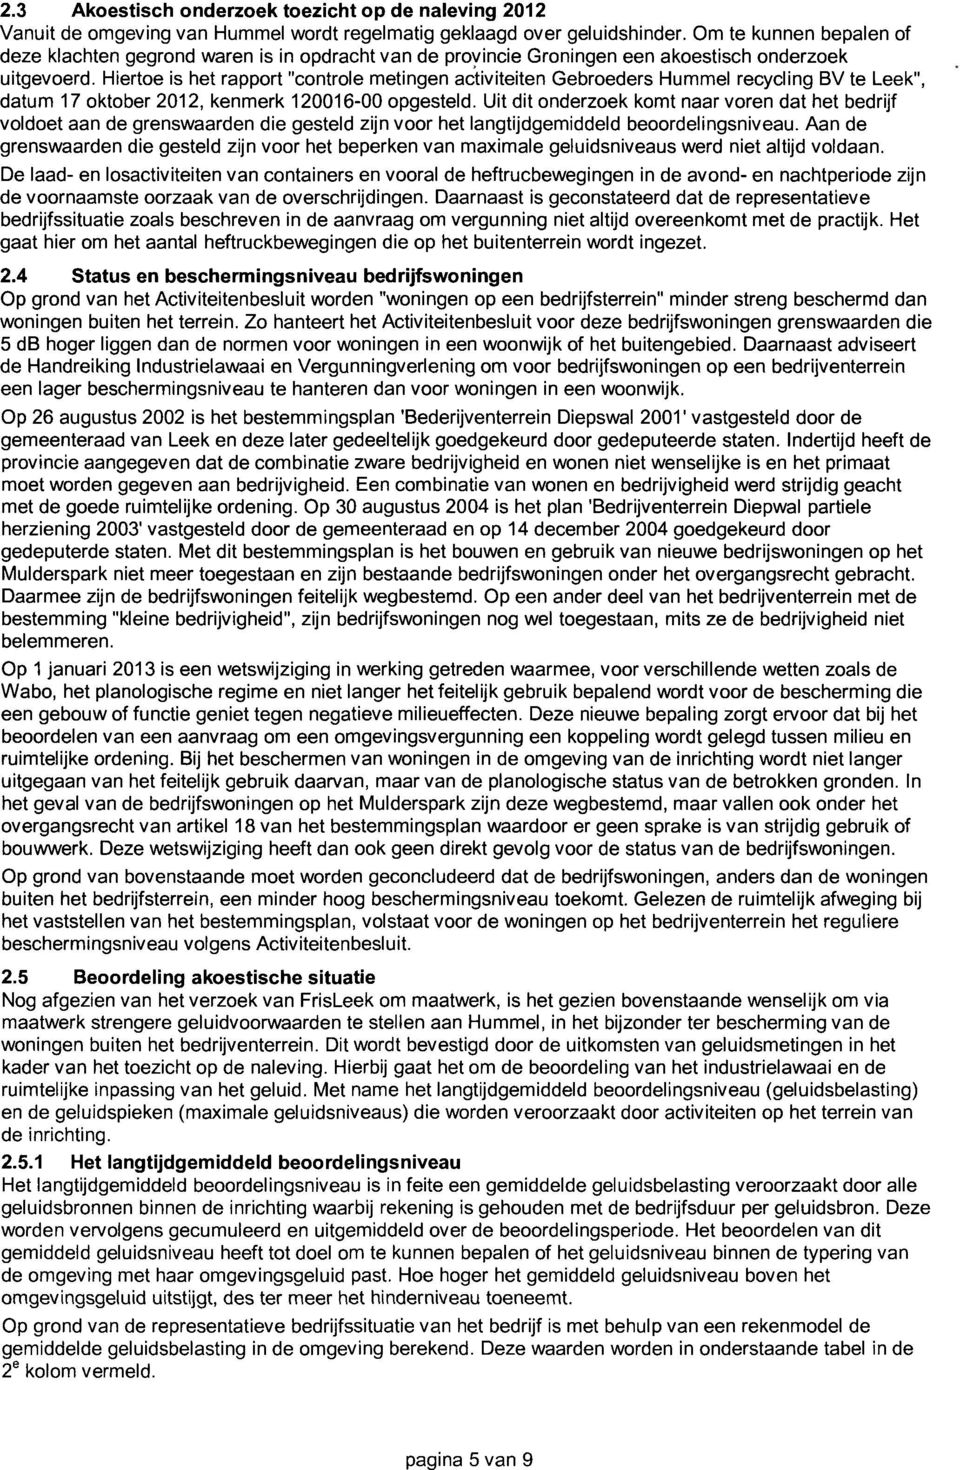 Hiertoe is het rapport "controle metingen activiteiten Gebroeders Hummel recycling BV te Leek", datum 17 oktober 2012, kenmerk 120016-00 opgesteld.